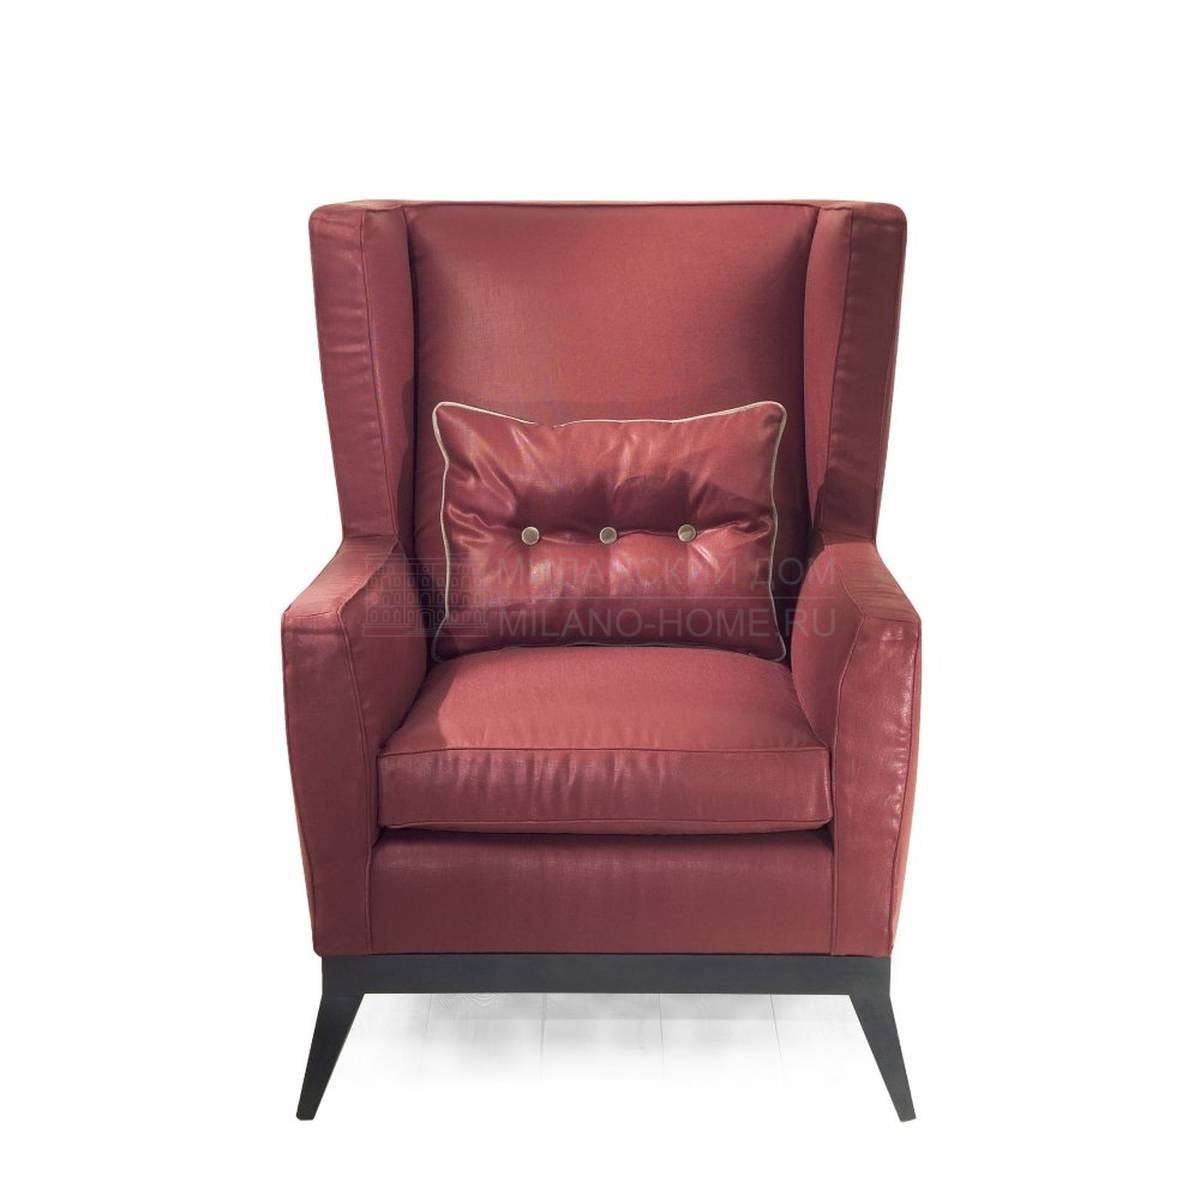 Каминное кресло Thalia armchair из Италии фабрики MARIONI